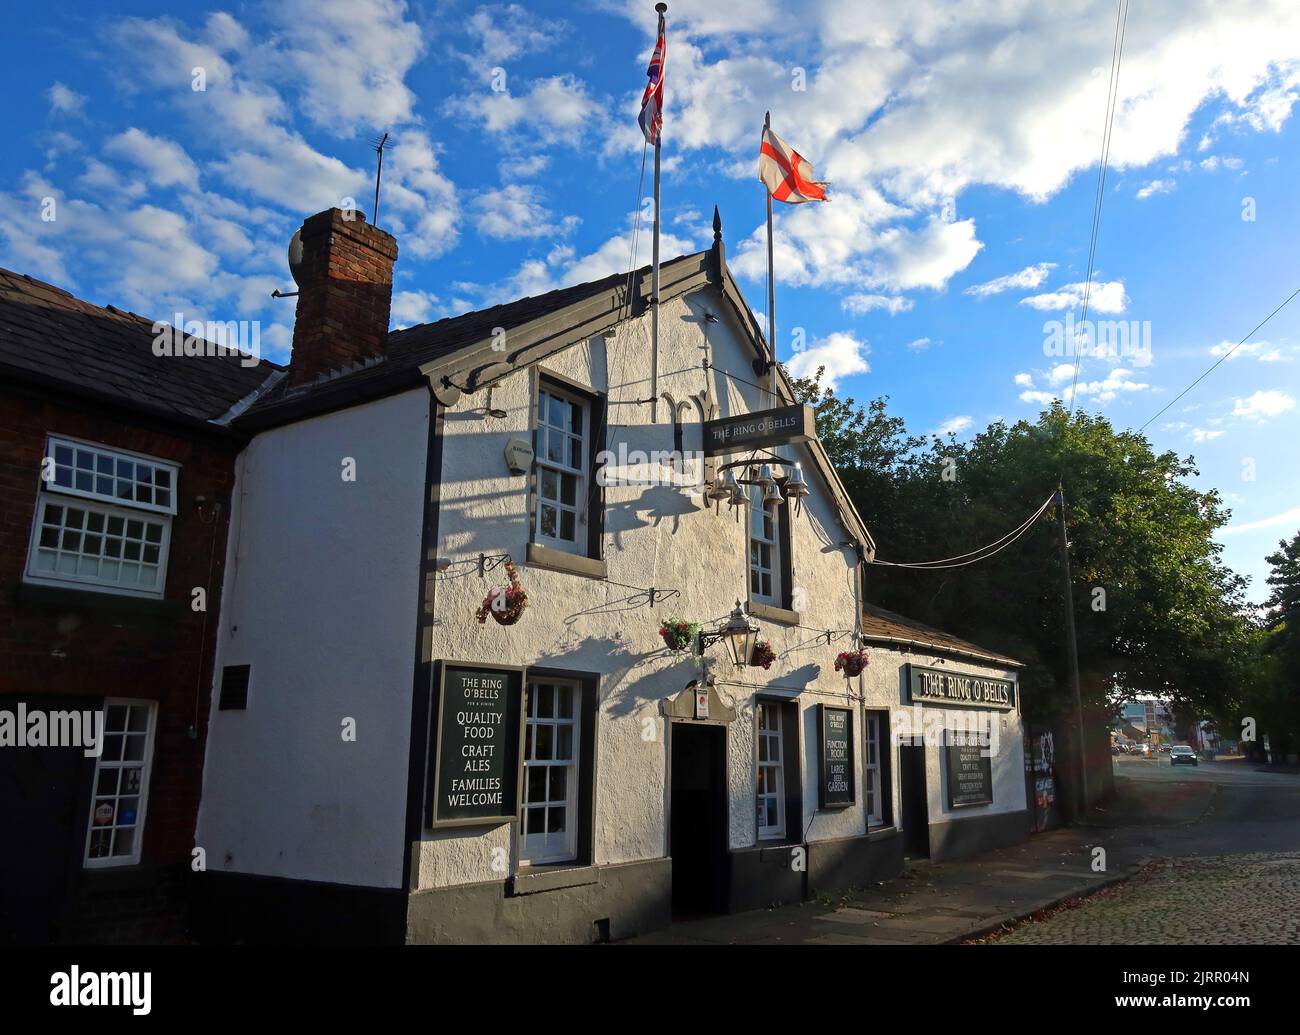 Ring of Bells pub volant les drapeaux de l'Angleterre et de l'Union, 131 Church Street, Warrington, Cheshire, Angleterre, ROYAUME-UNI, WA1 2TL Banque D'Images